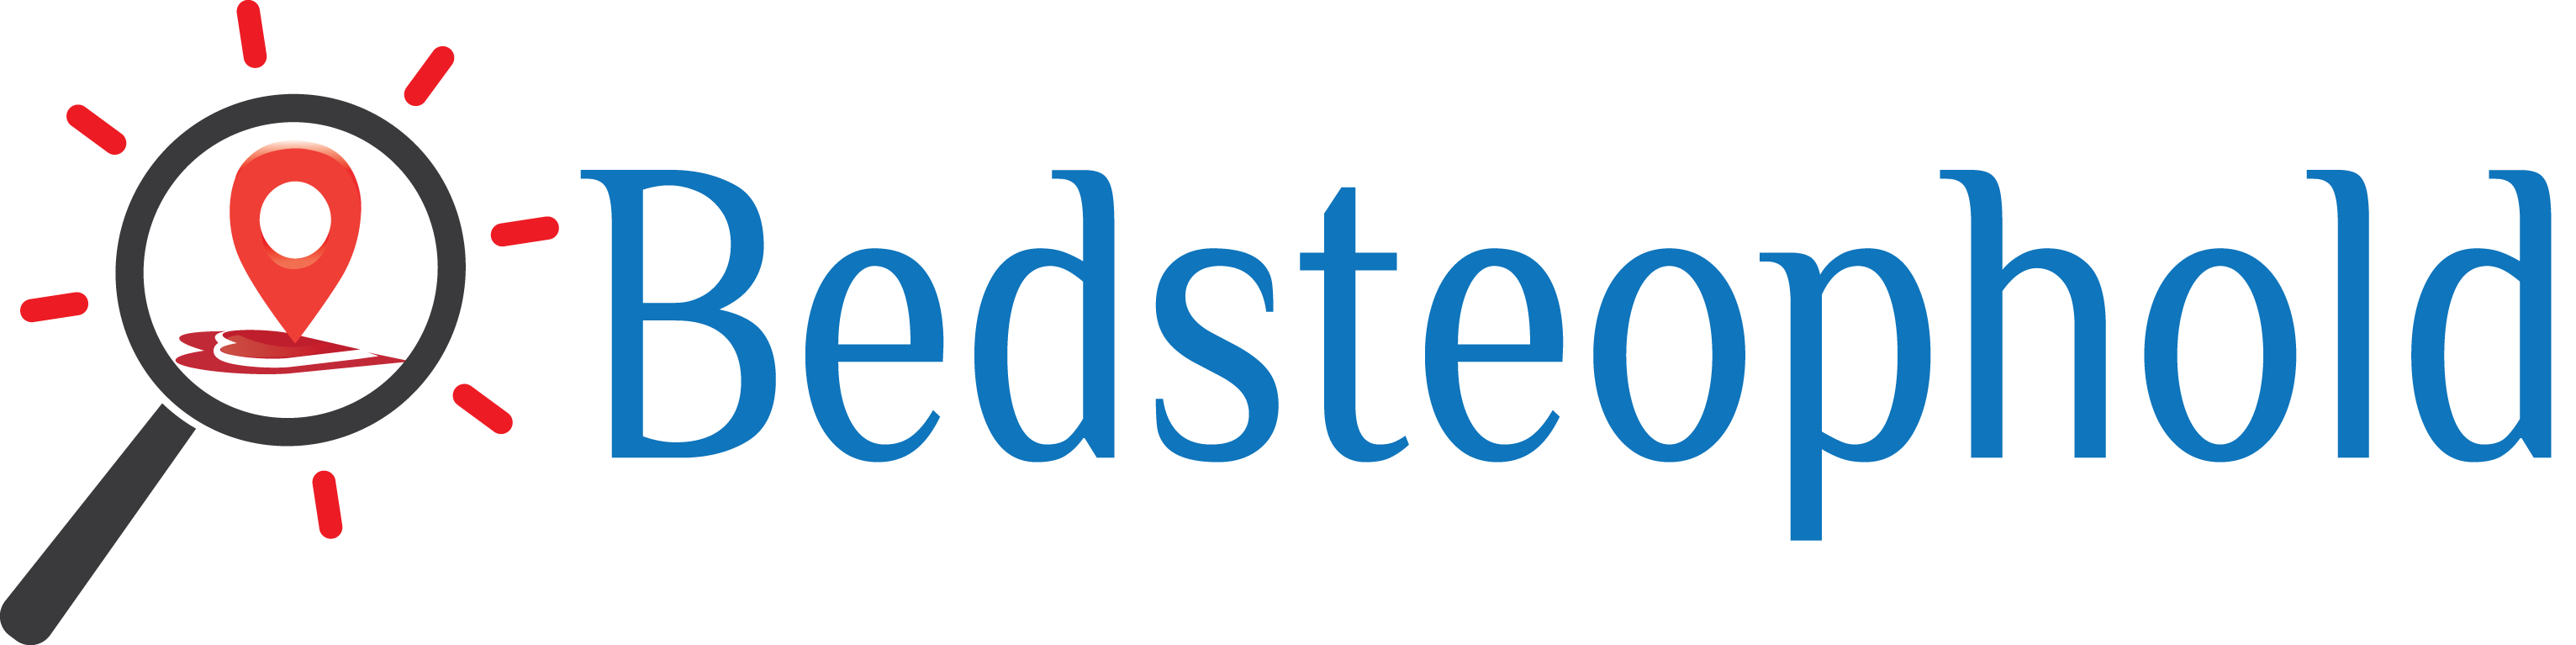 Bedsteophold.dk logo